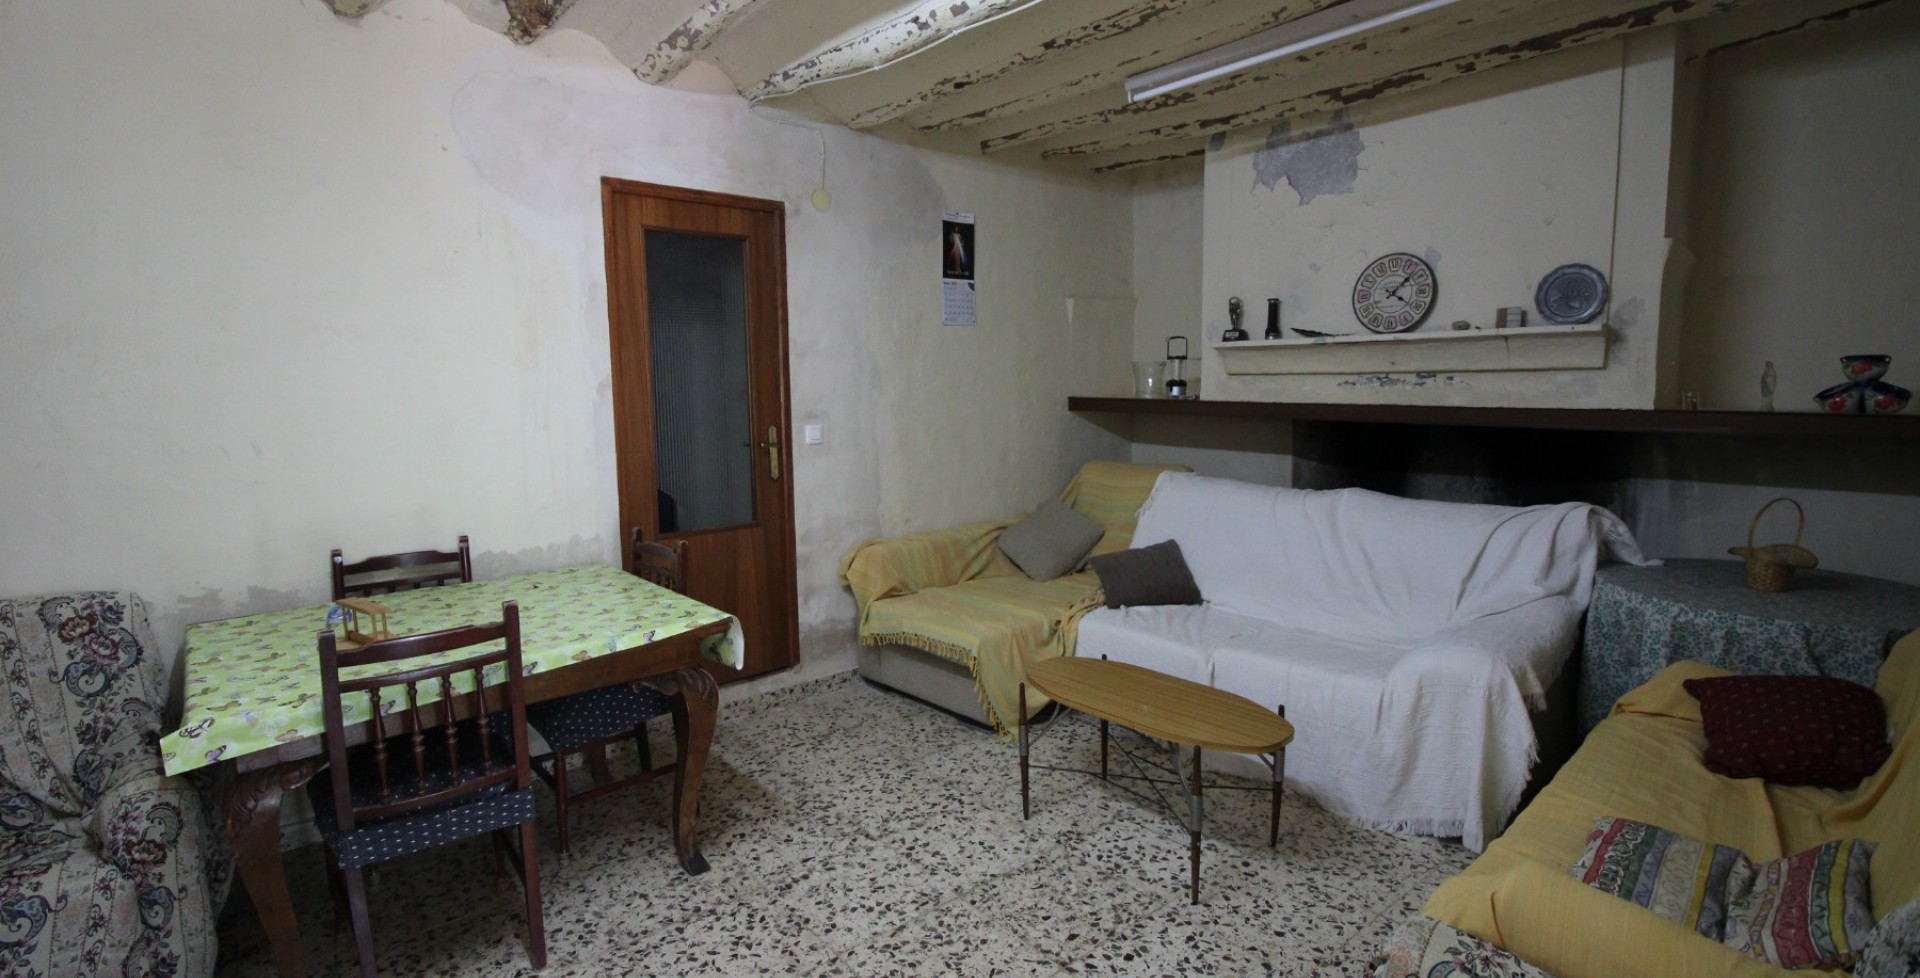 Salón tradicional de casa de campo con carácter, Blanca, Murcia, España